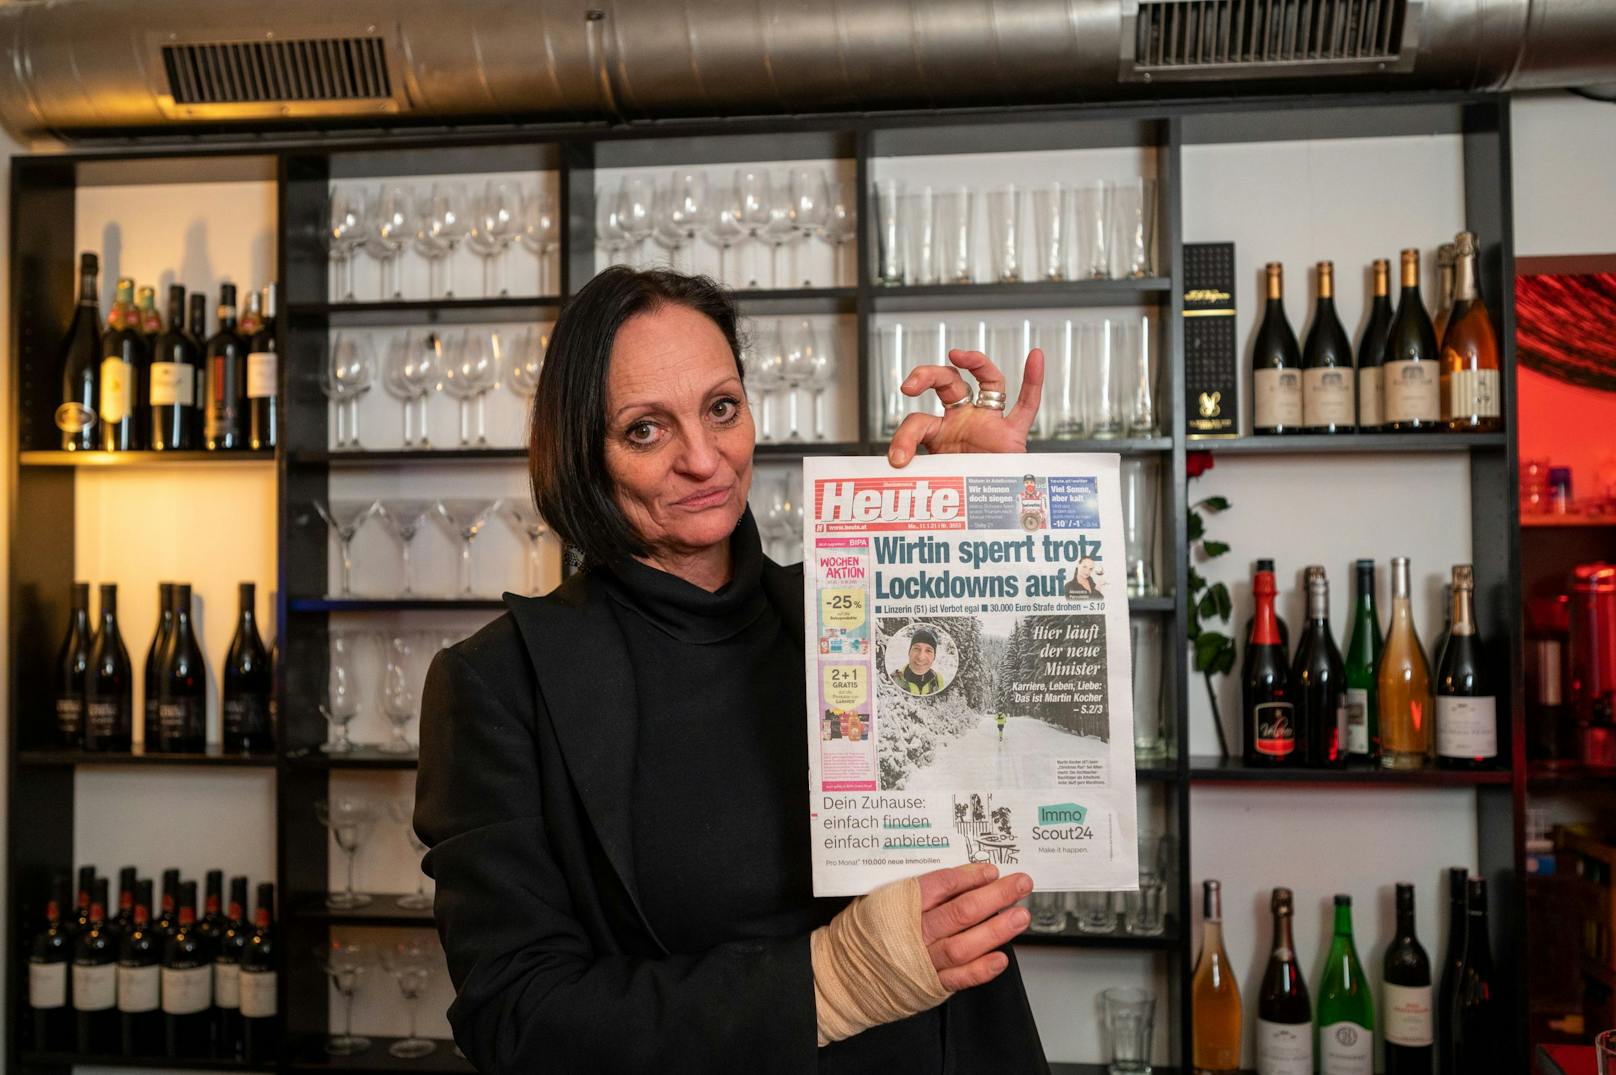 Sie hat's sogar aufs Titelblatt geschafft! <em>"Heute"</em> hat als erstes Medium vom Vorhaben der Gastronomin berichtet. Nun muss die Linzerin 5.000 Euro Strafe zahlen.